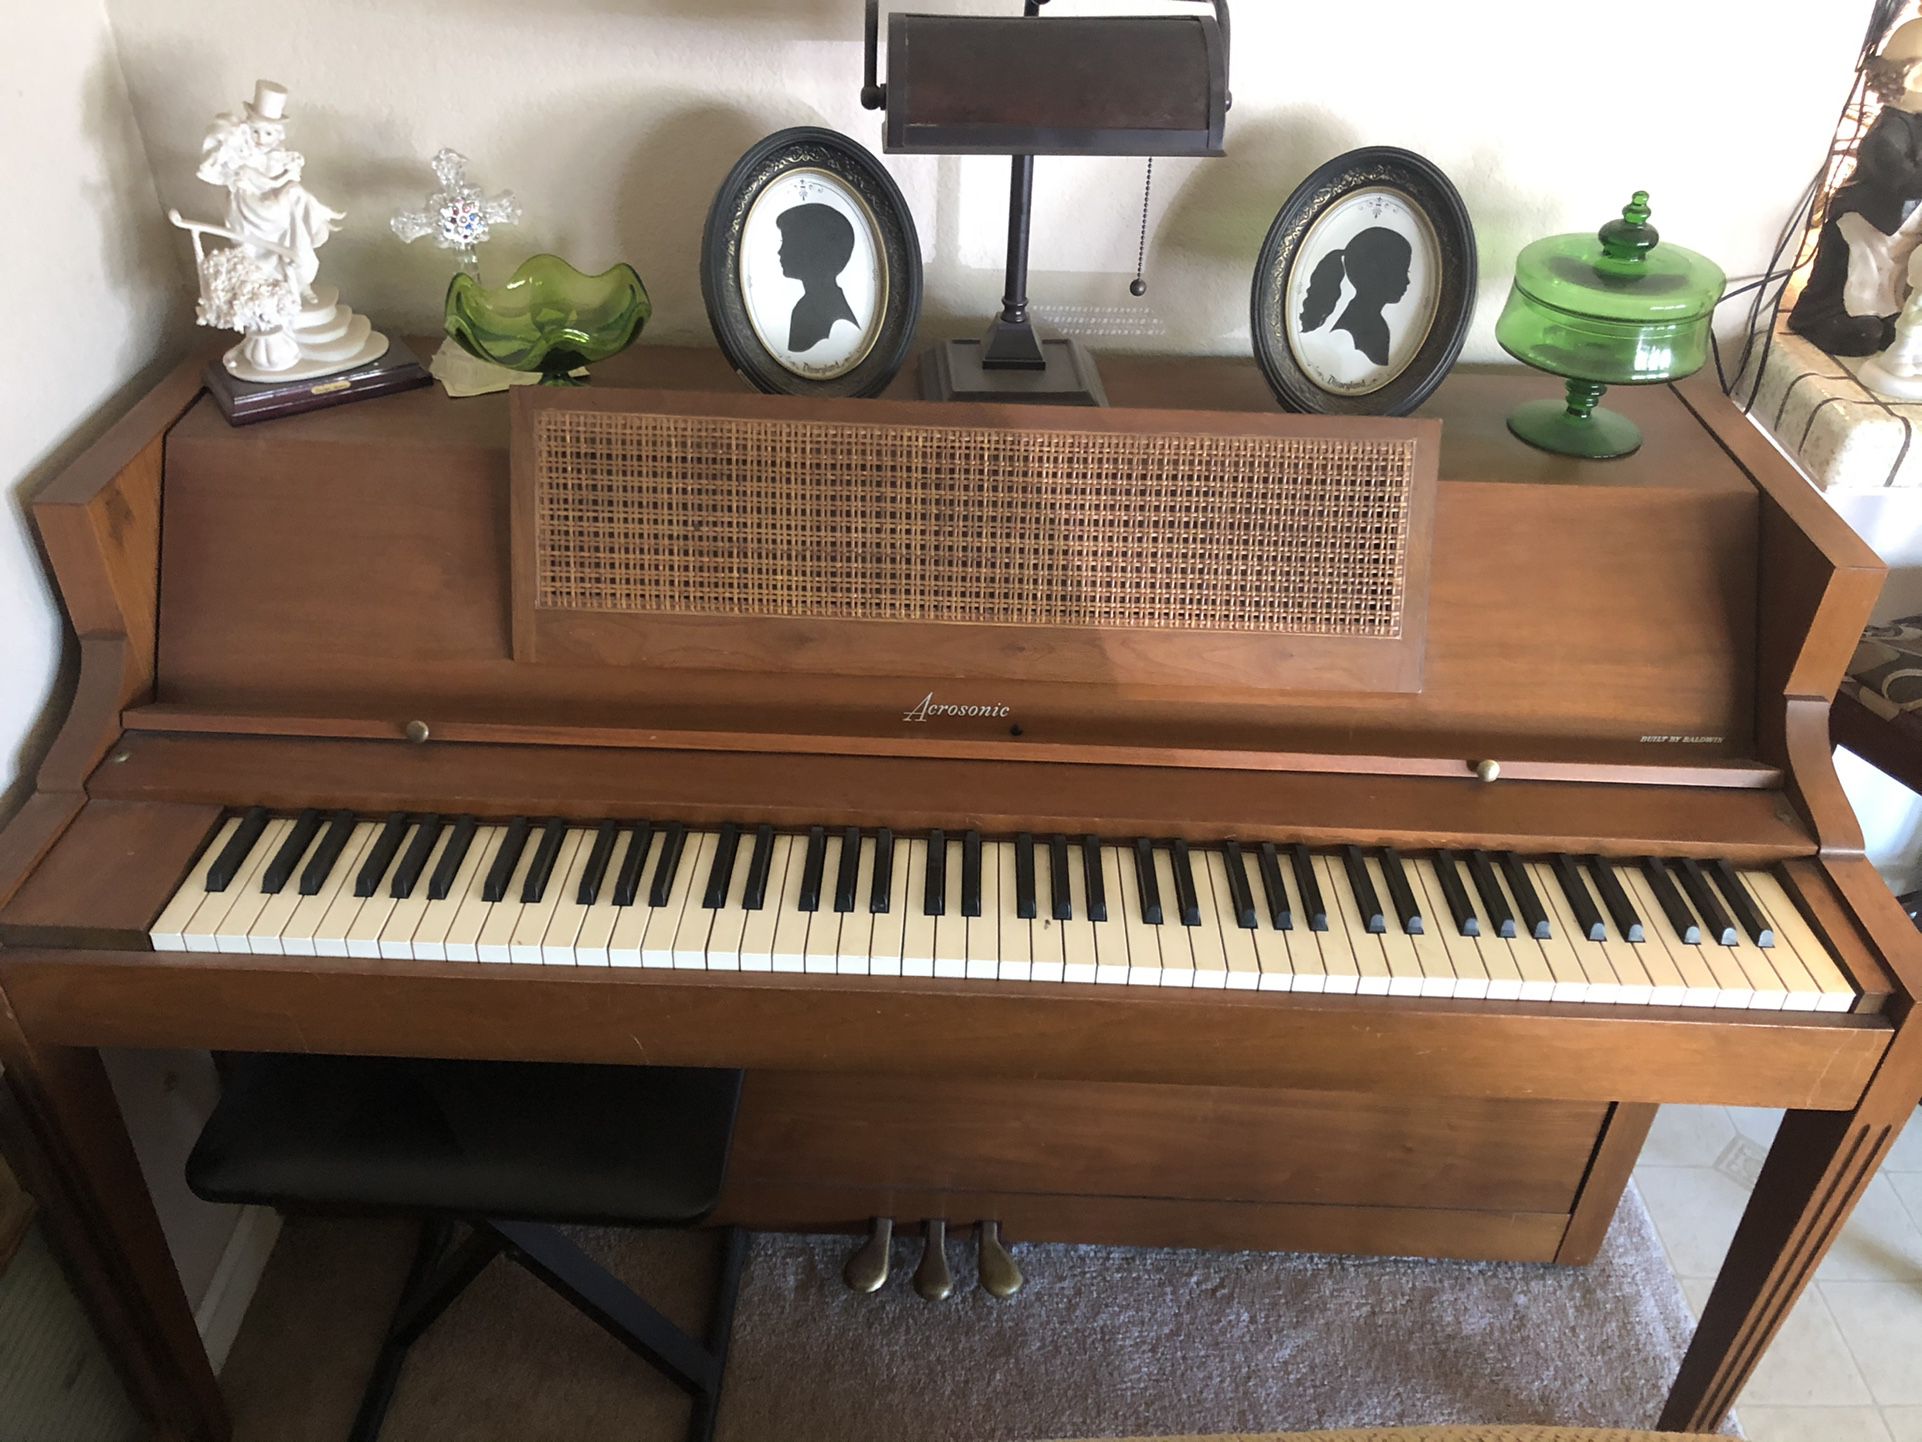 Acrsonic Piano Built By Baldwin